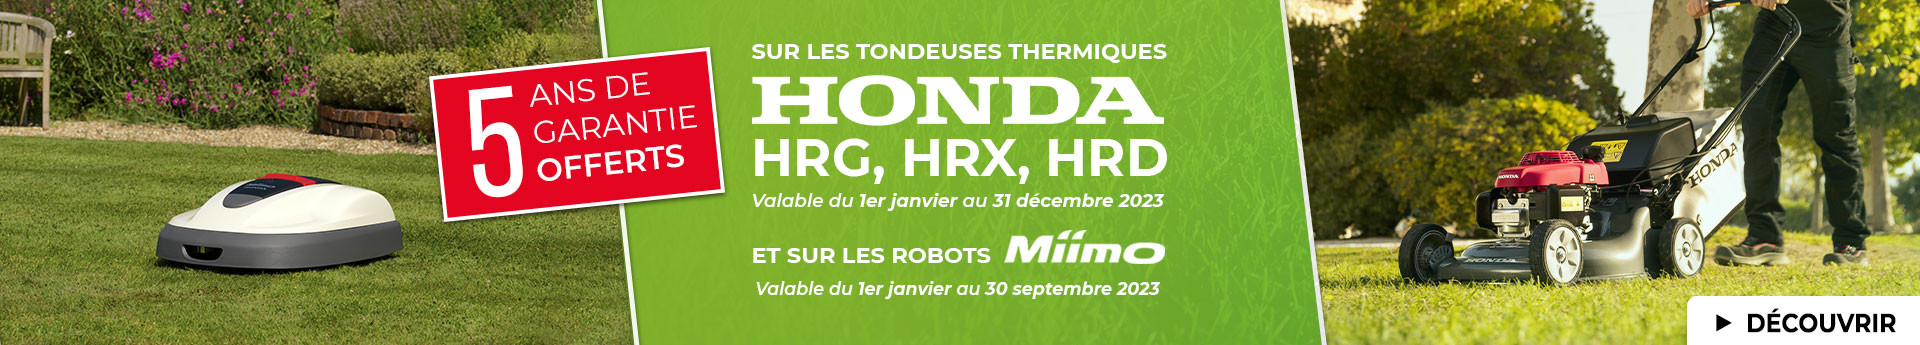 Profitez de 5 ans de garantie offerts sur les tondeuses thermiques Honda HRG, HRX et HRD et sur les tondeuses robot Honda Miimo !